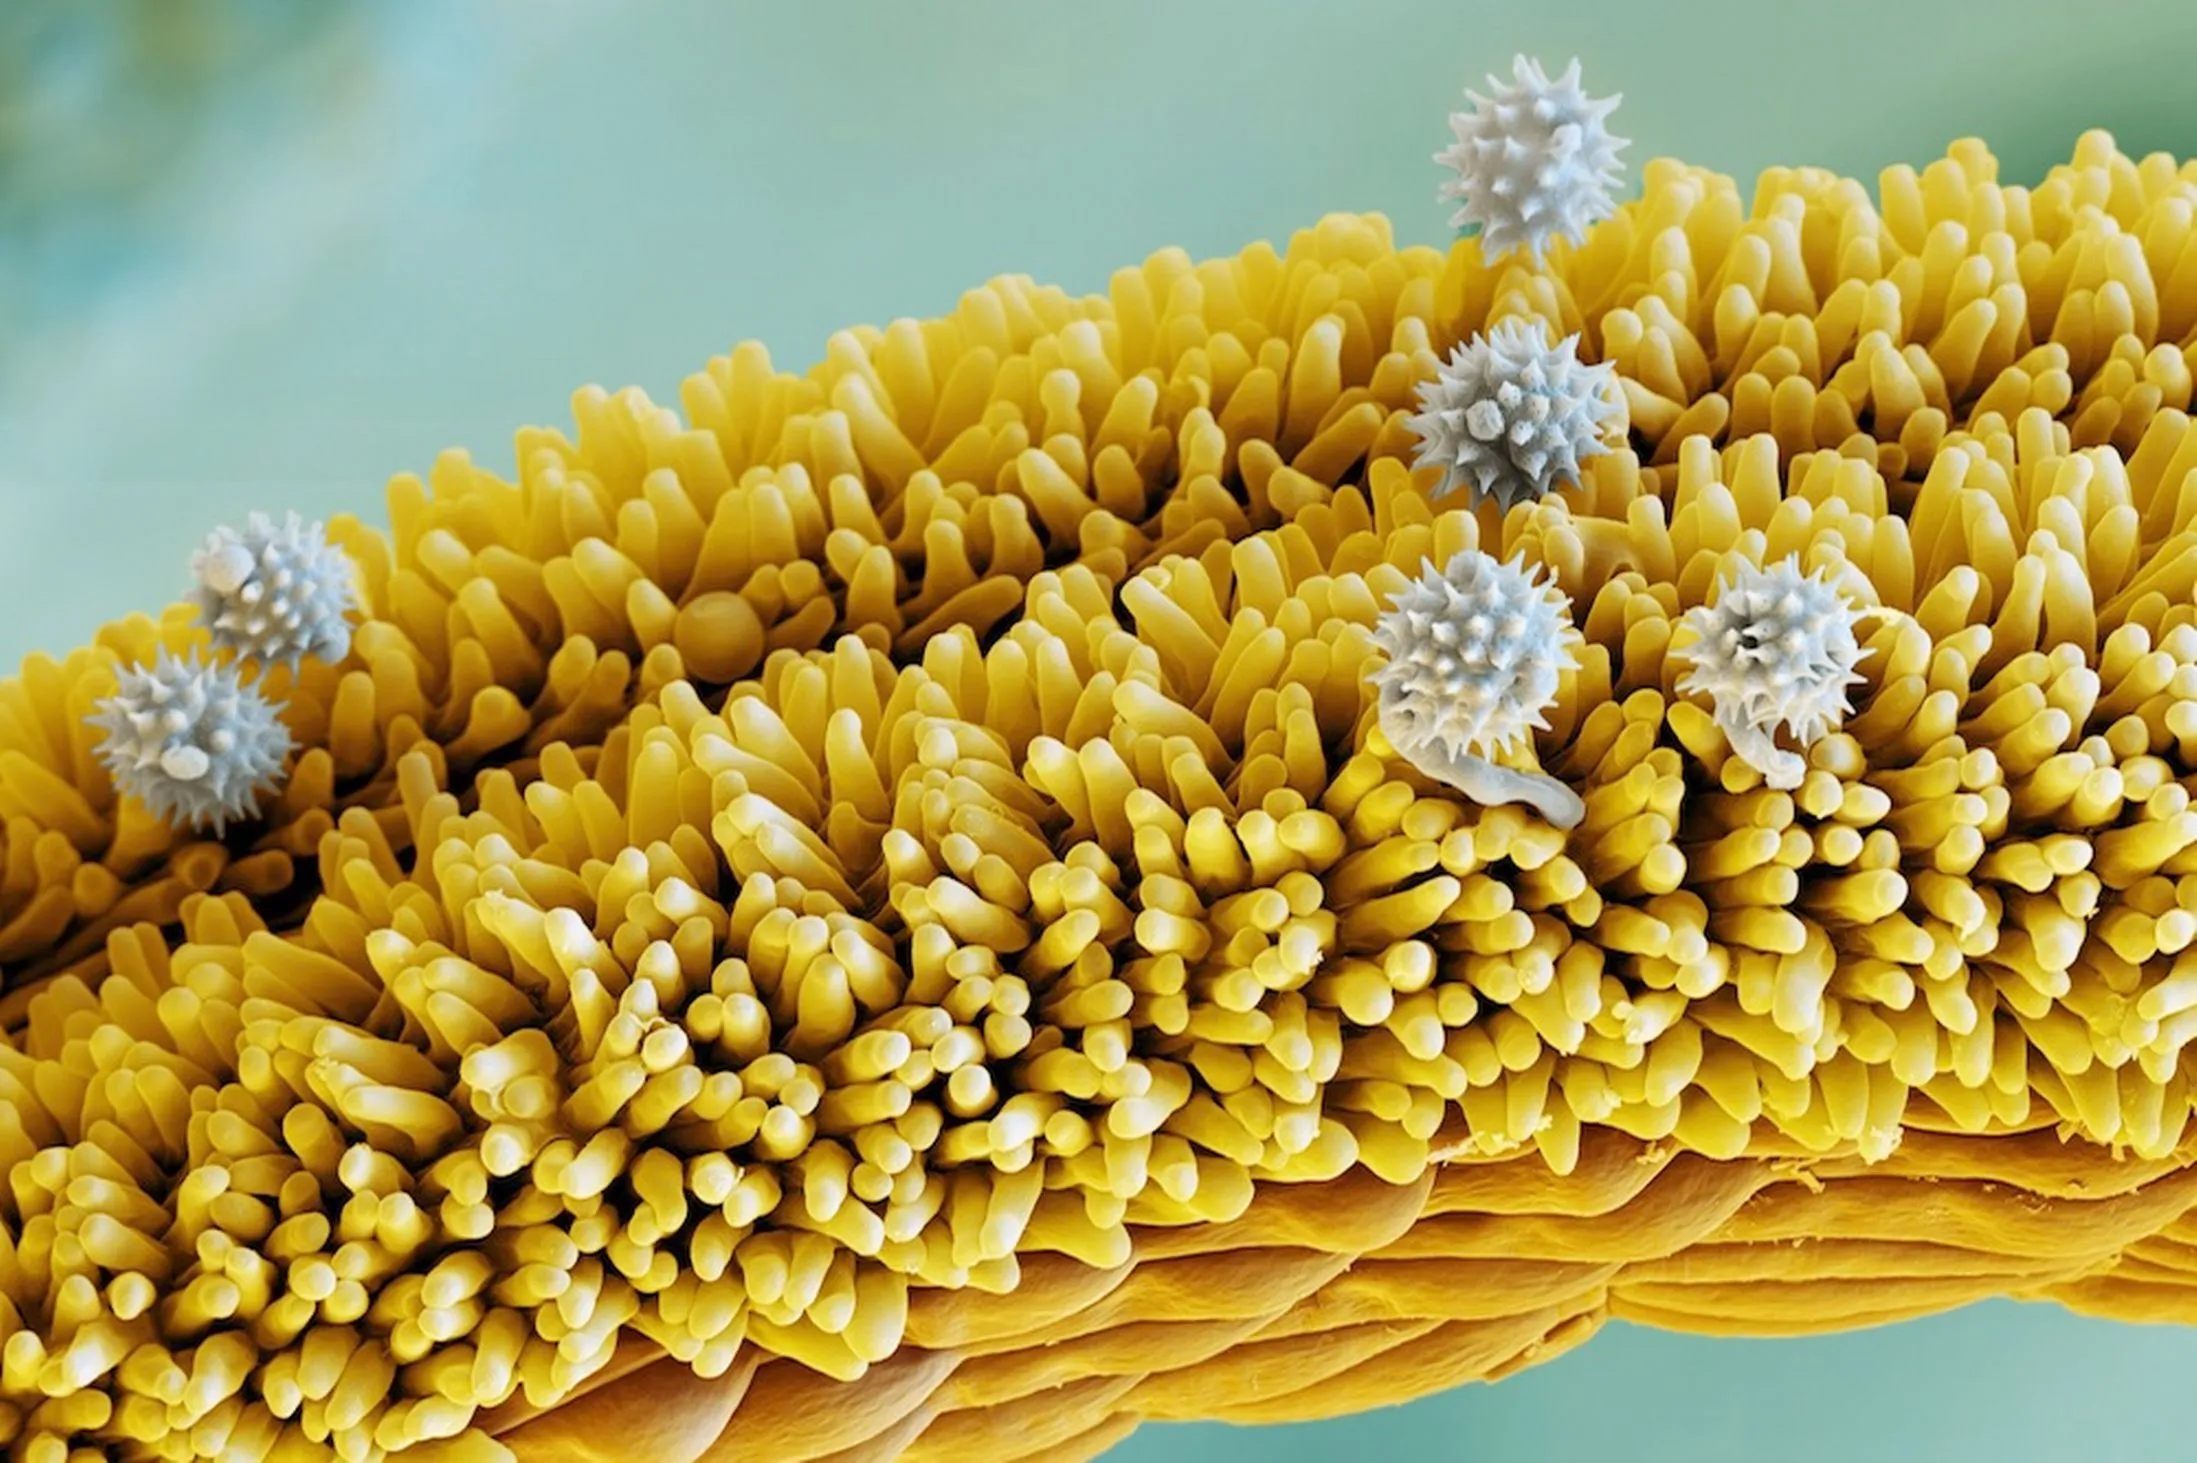 Как выглядит пыльца. Пыльца микрофотографии. Пыльца донника под микроскопом. Пыльца сосны микрофотография. Пыльца электронный микроскоп.